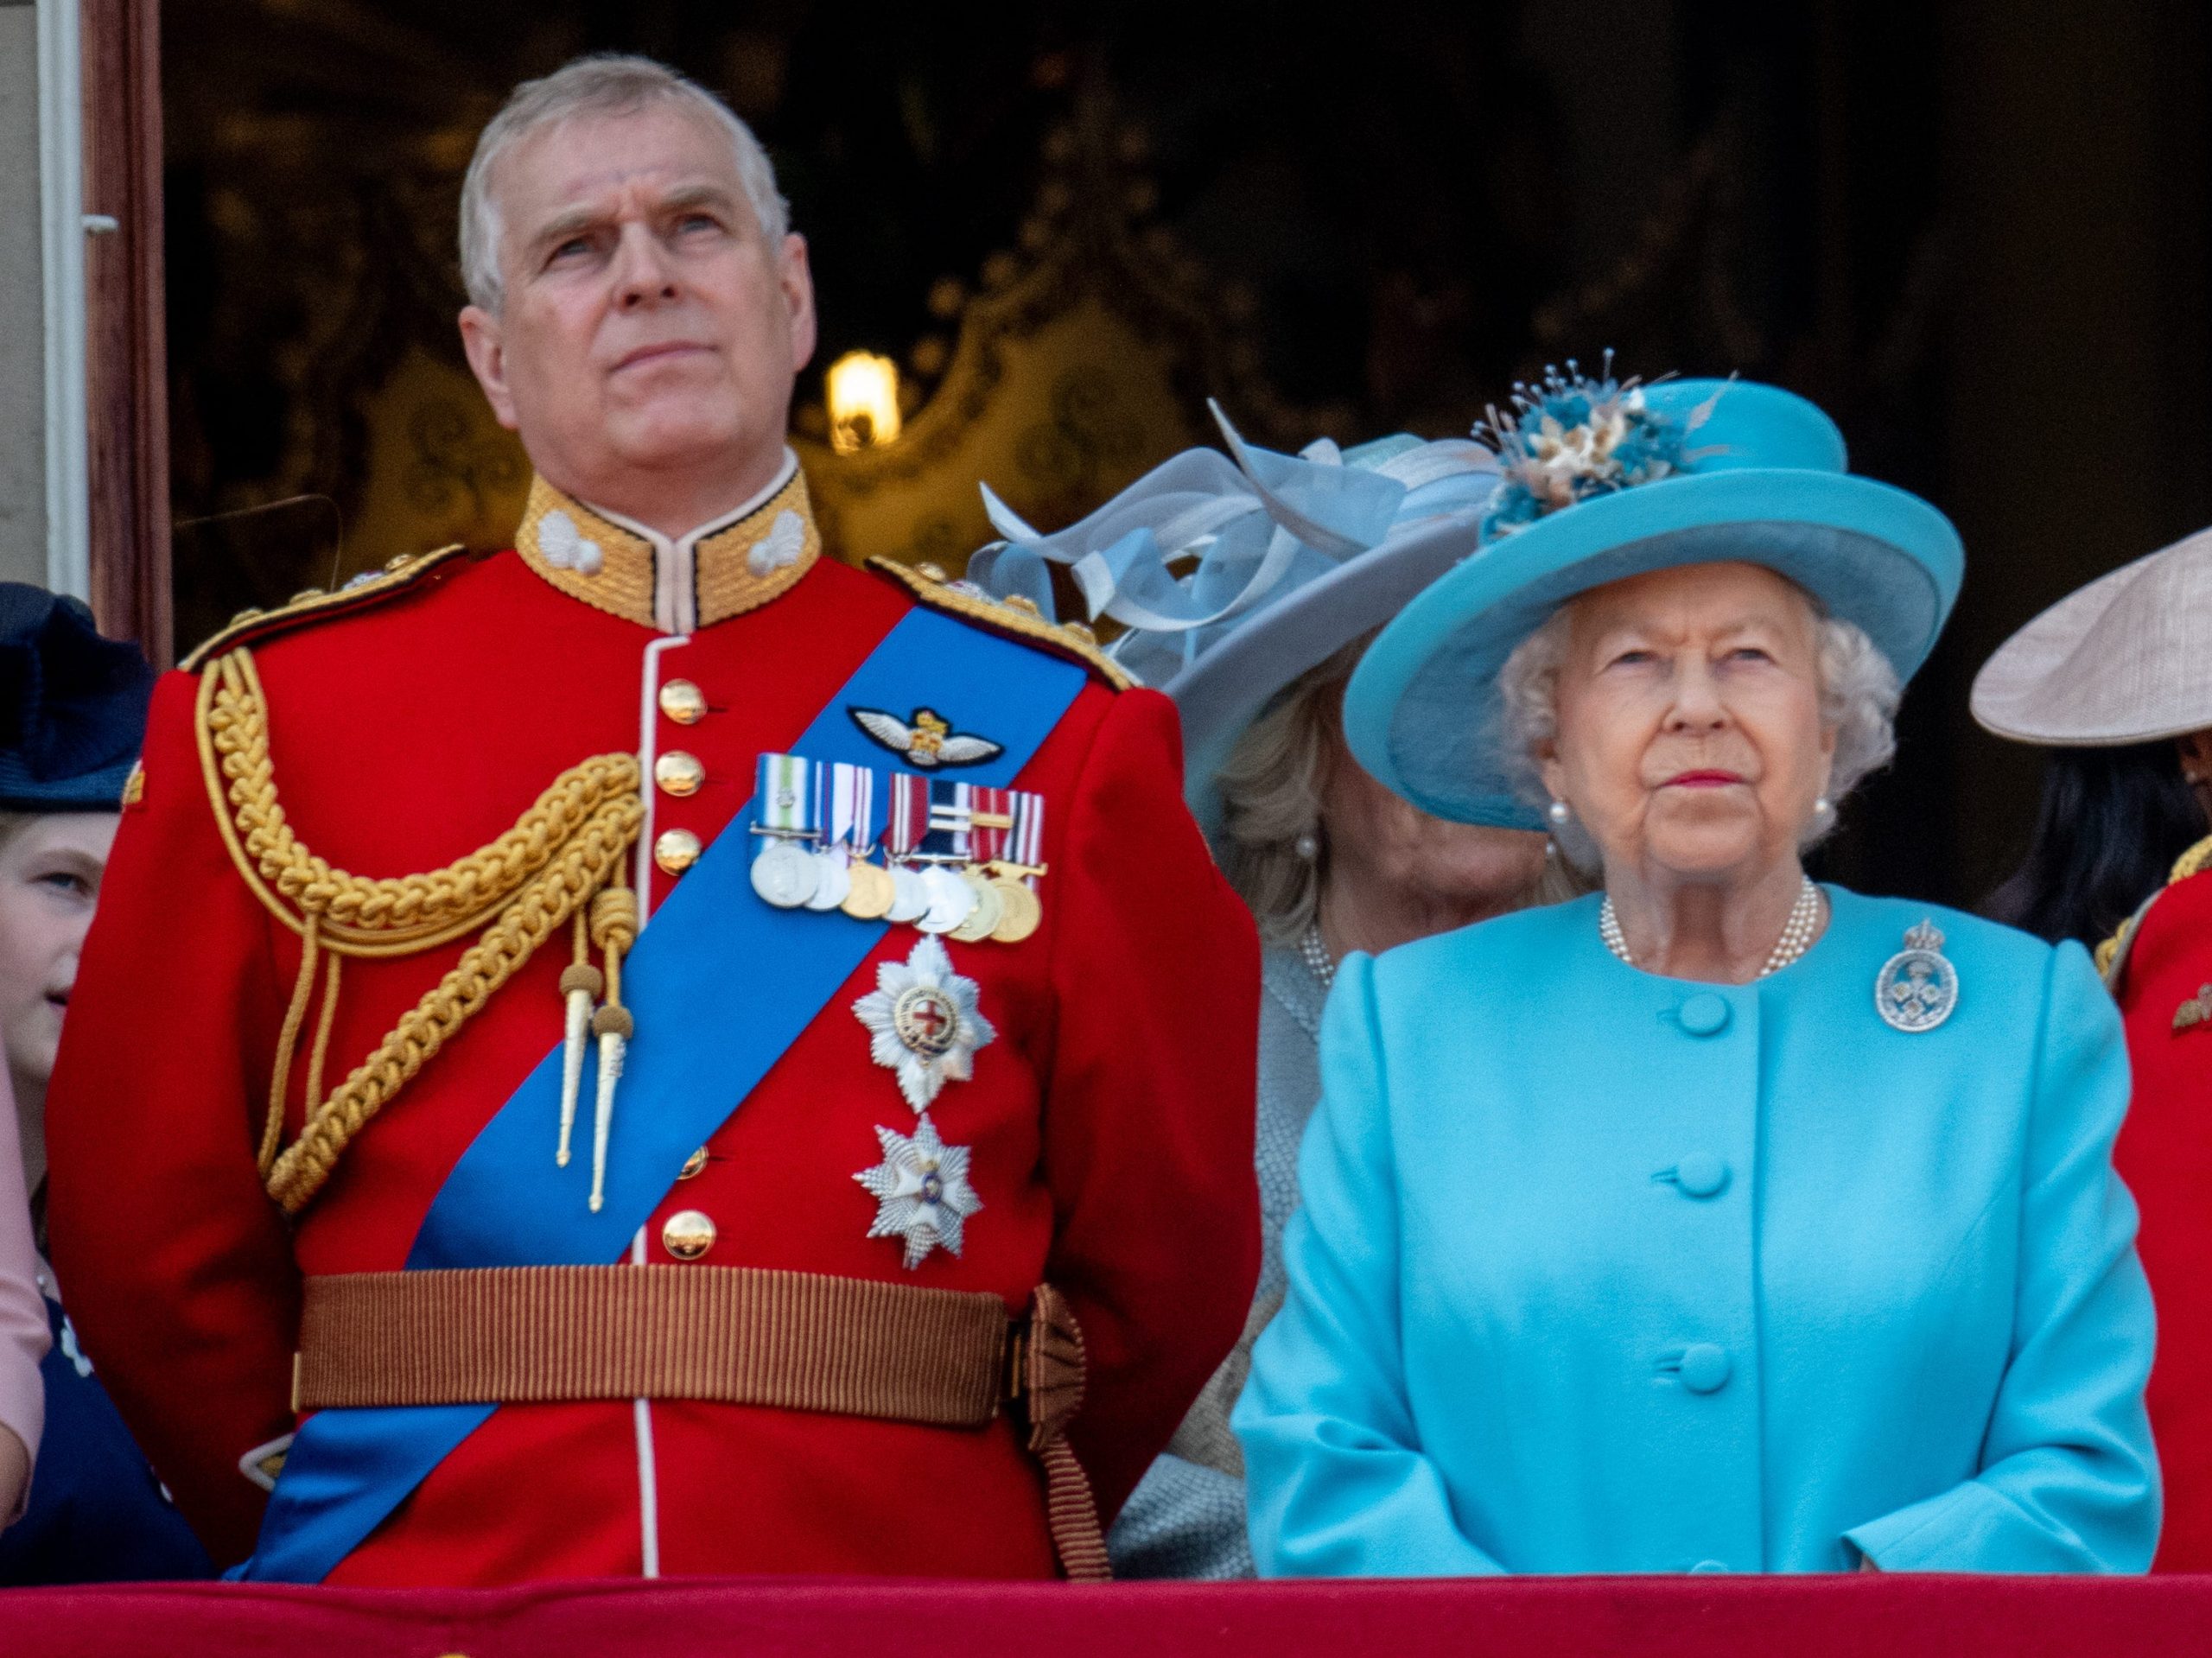 The Duke of York and Queen Elizabeth II